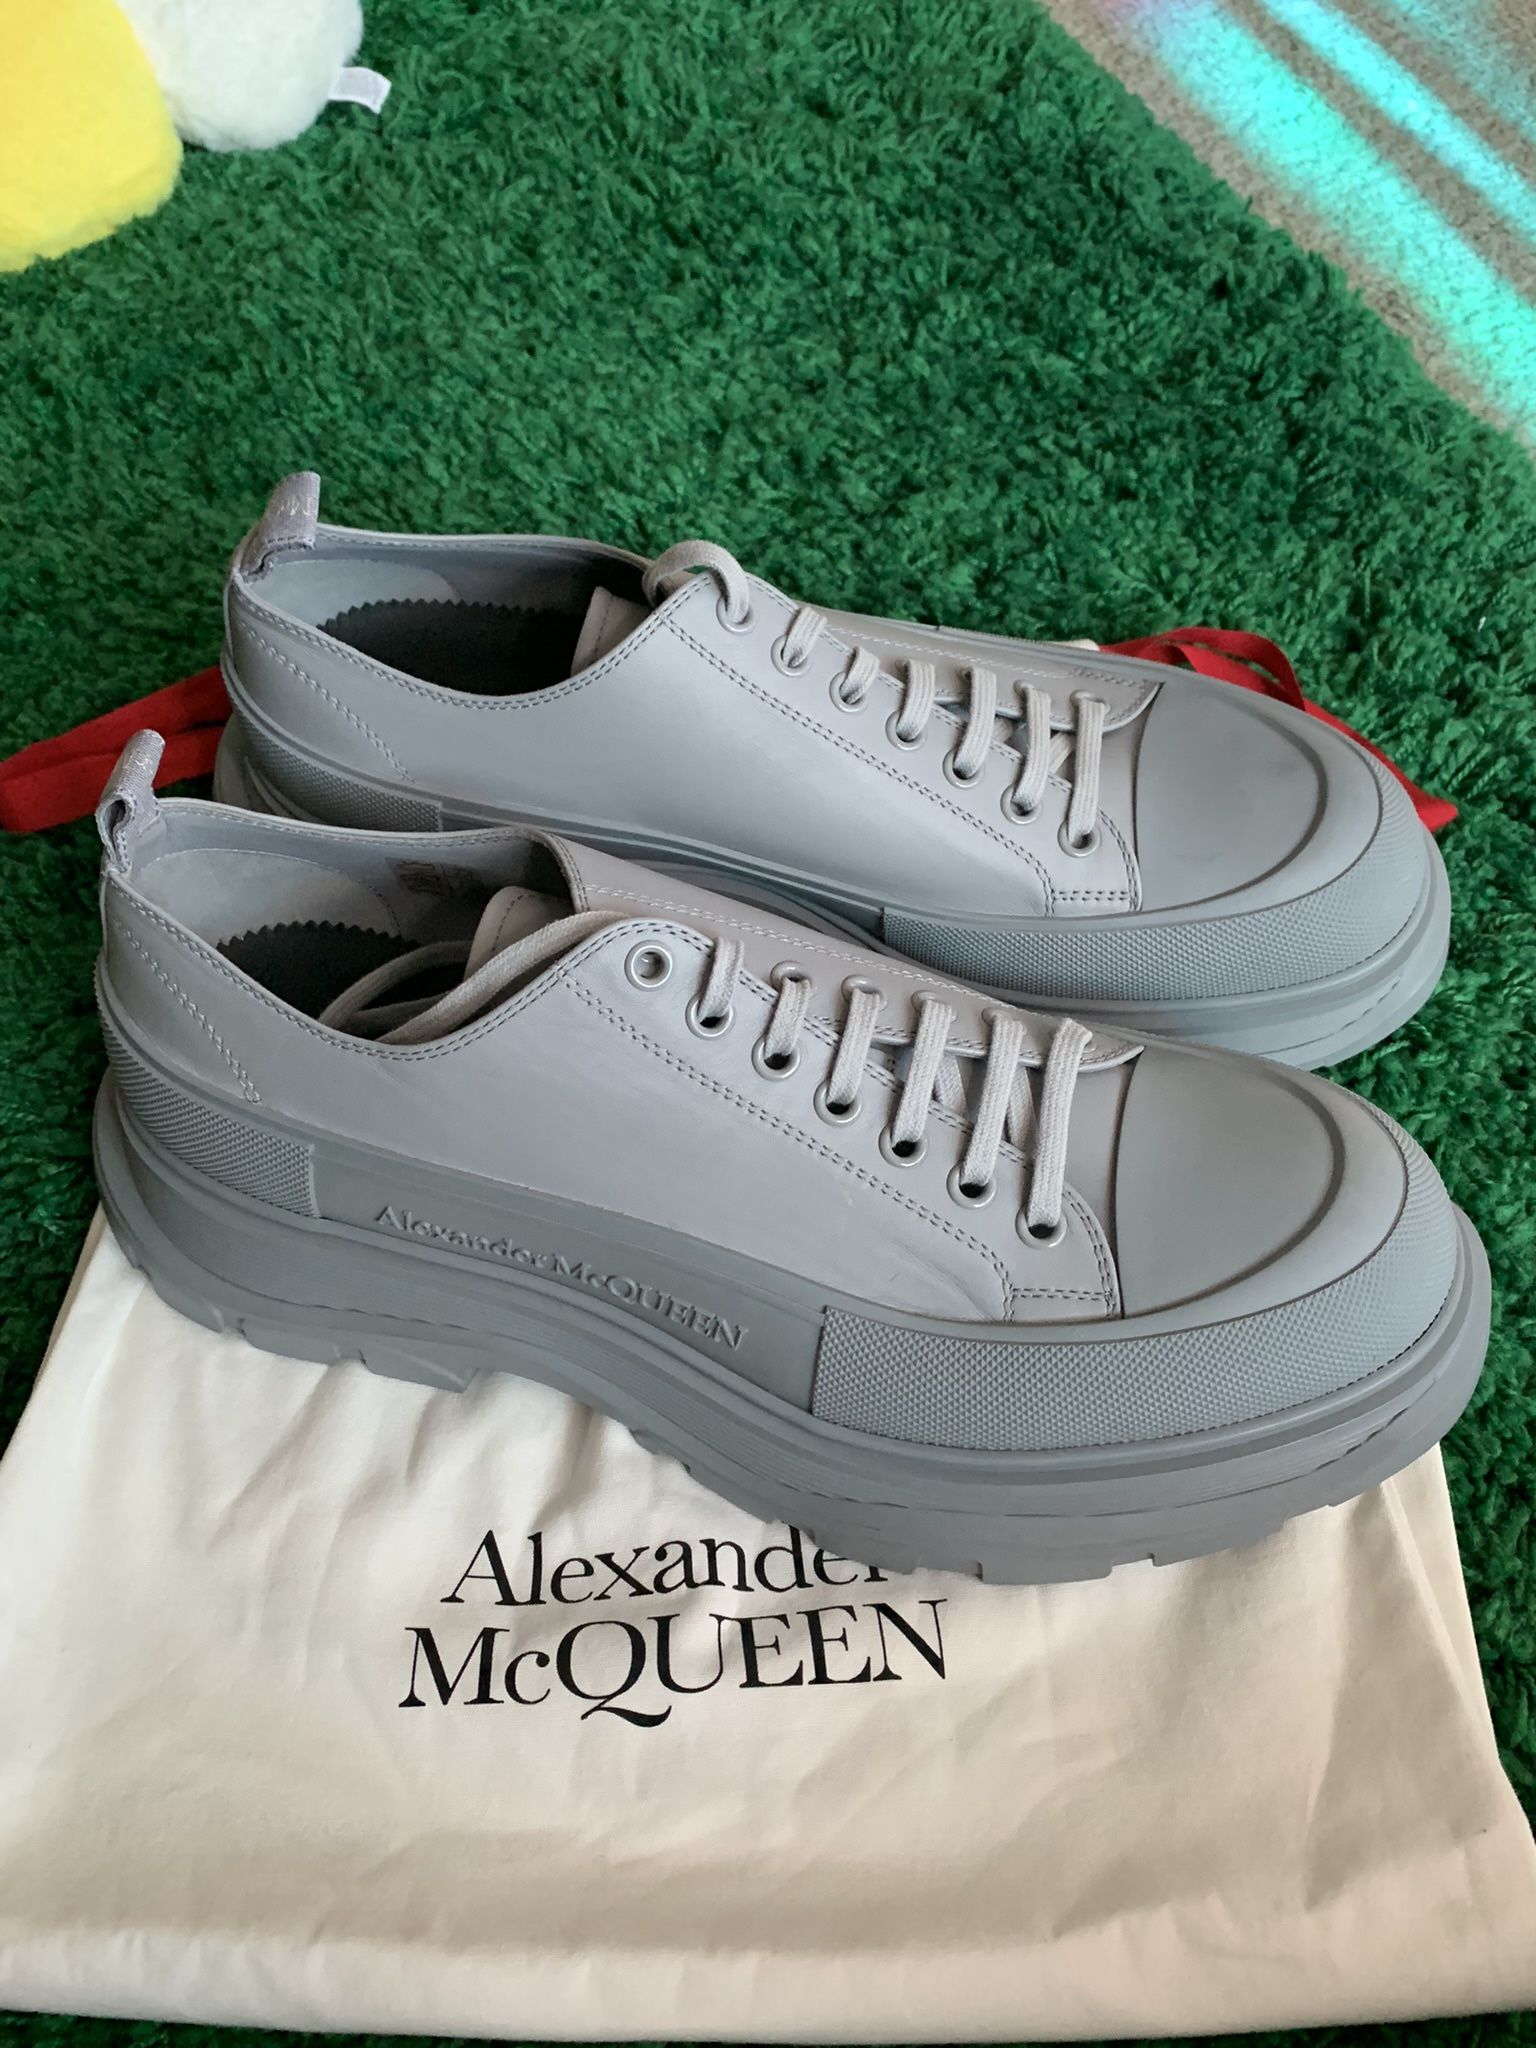 Alexander McQueen Sneaker Boots Leather Sz 16